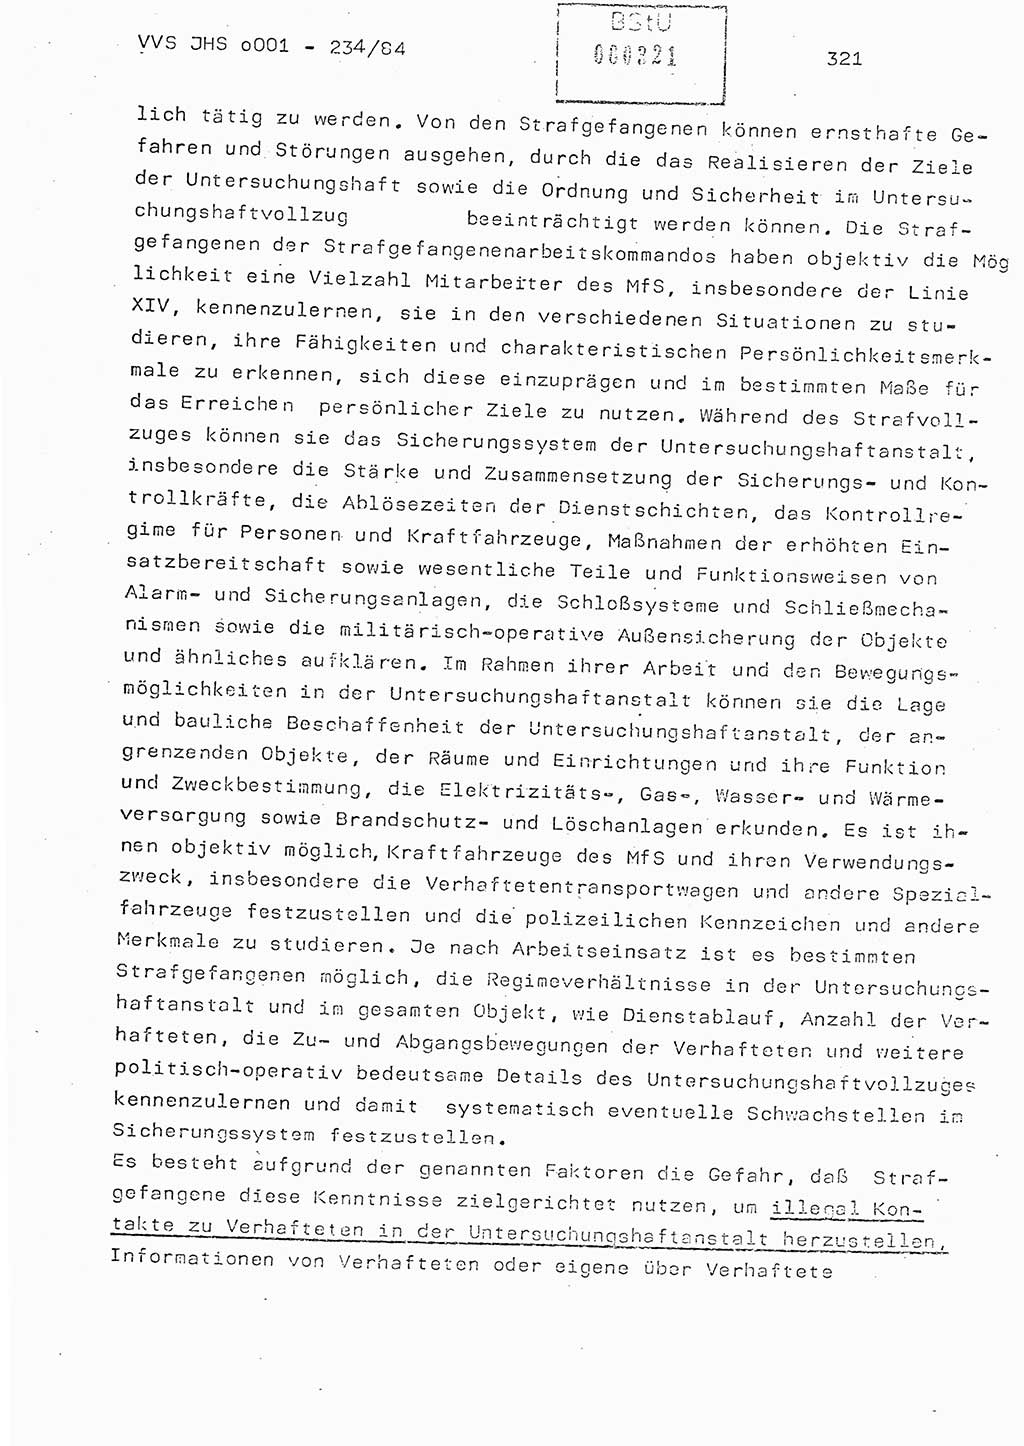 Dissertation Oberst Siegfried Rataizick (Abt. ⅩⅣ), Oberstleutnant Volkmar Heinz (Abt. ⅩⅣ), Oberstleutnant Werner Stein (HA Ⅸ), Hauptmann Heinz Conrad (JHS), Ministerium für Staatssicherheit (MfS) [Deutsche Demokratische Republik (DDR)], Juristische Hochschule (JHS), Vertrauliche Verschlußsache (VVS) o001-234/84, Potsdam 1984, Seite 321 (Diss. MfS DDR JHS VVS o001-234/84 1984, S. 321)